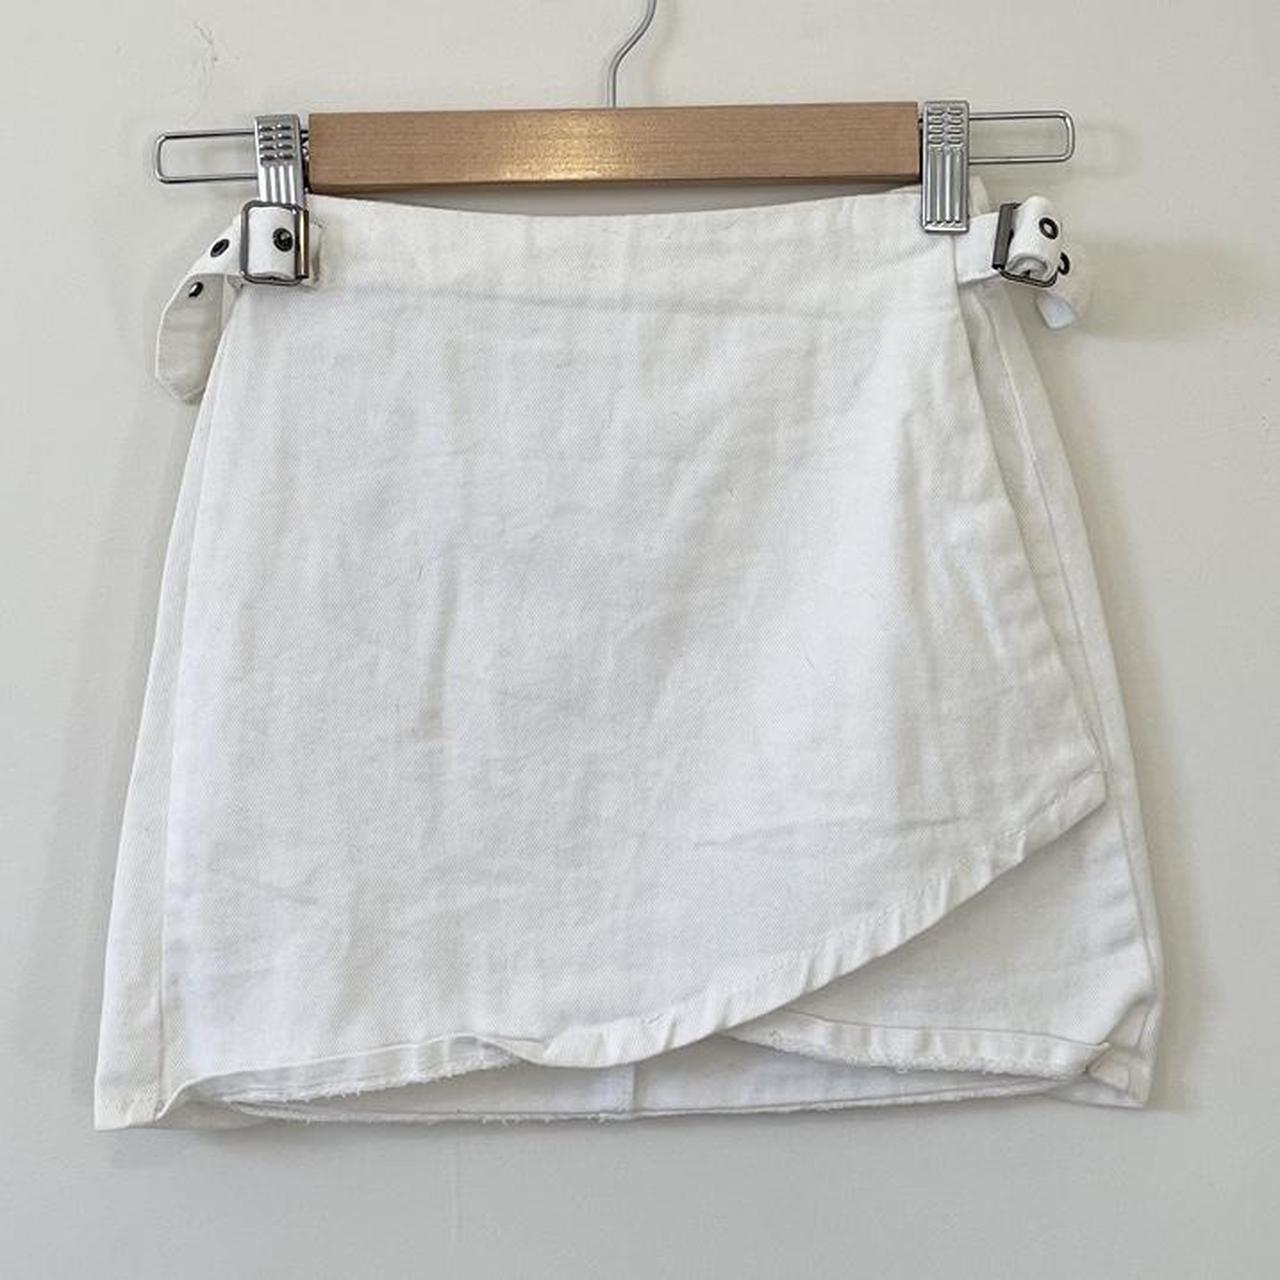 VRG GRL white mini skirt White denim High... - Depop